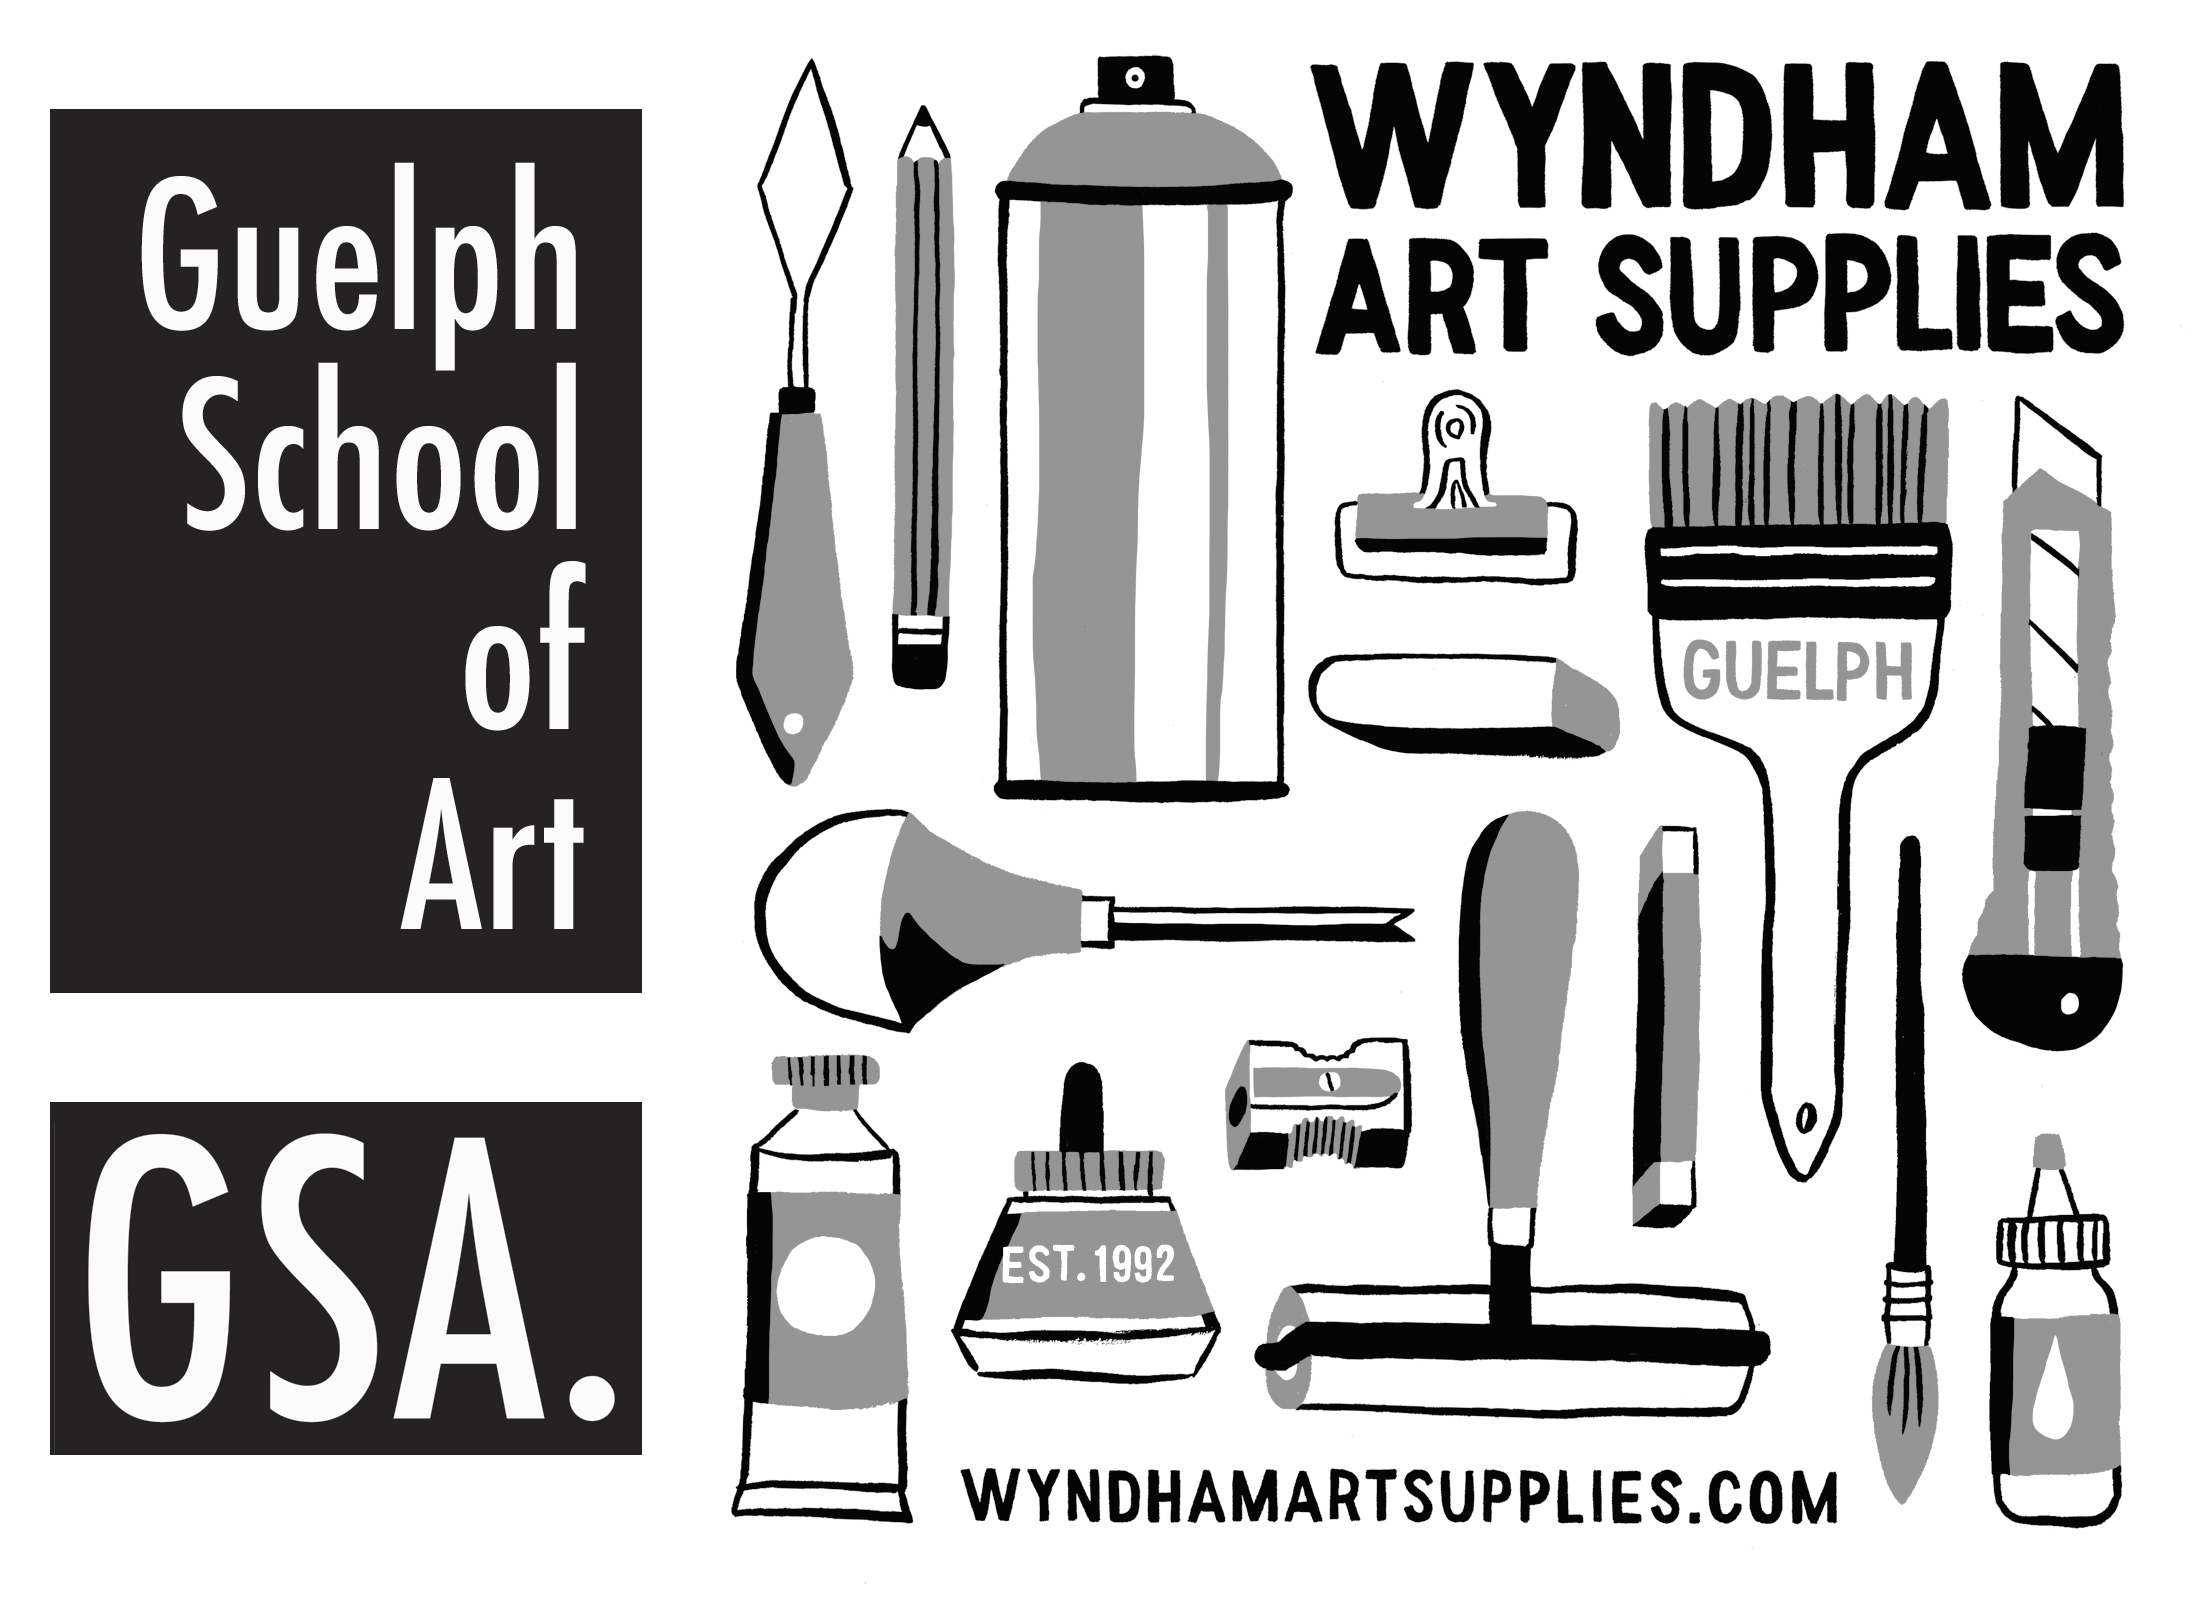 Wyndham Arts Online Gift Card - Wyndham Art Supplies